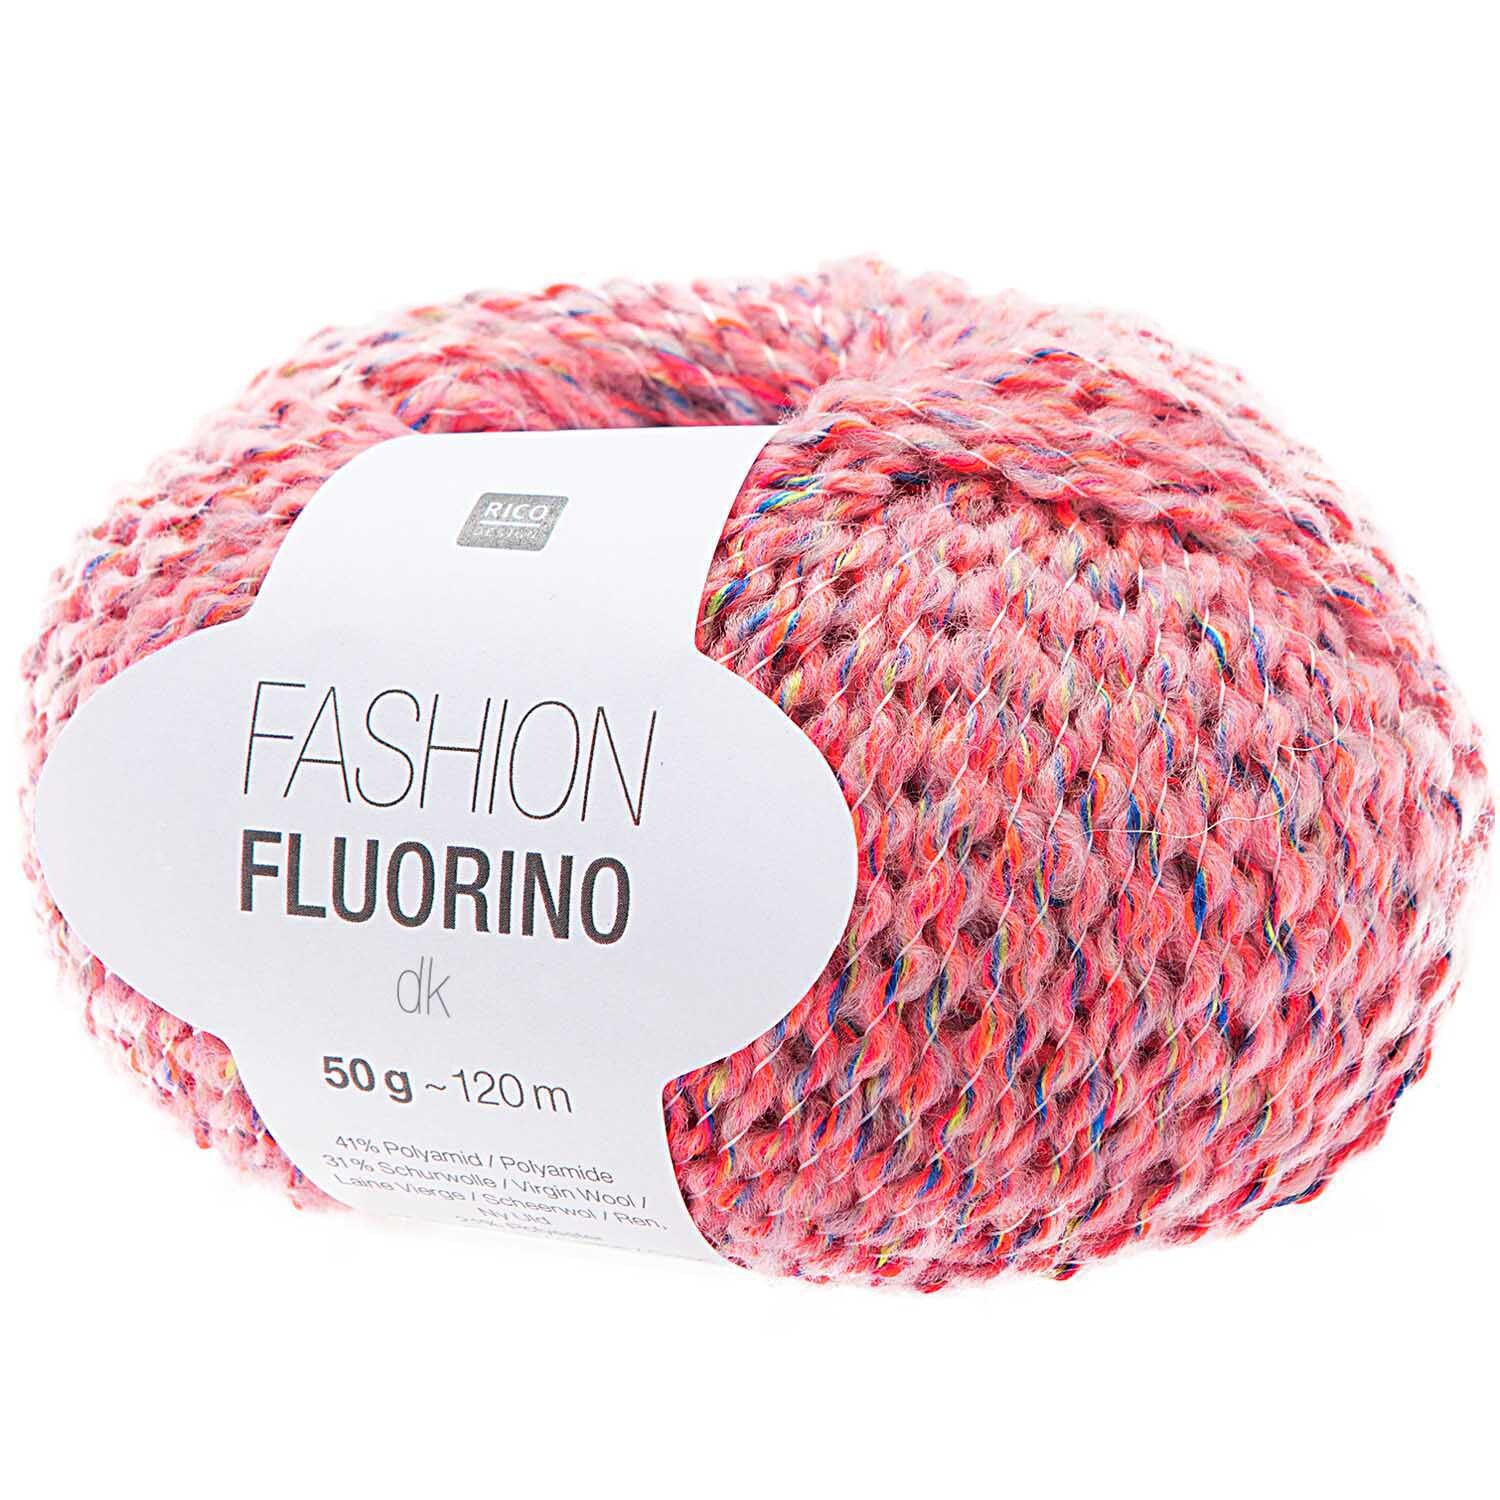 Fashion Fluorino dk